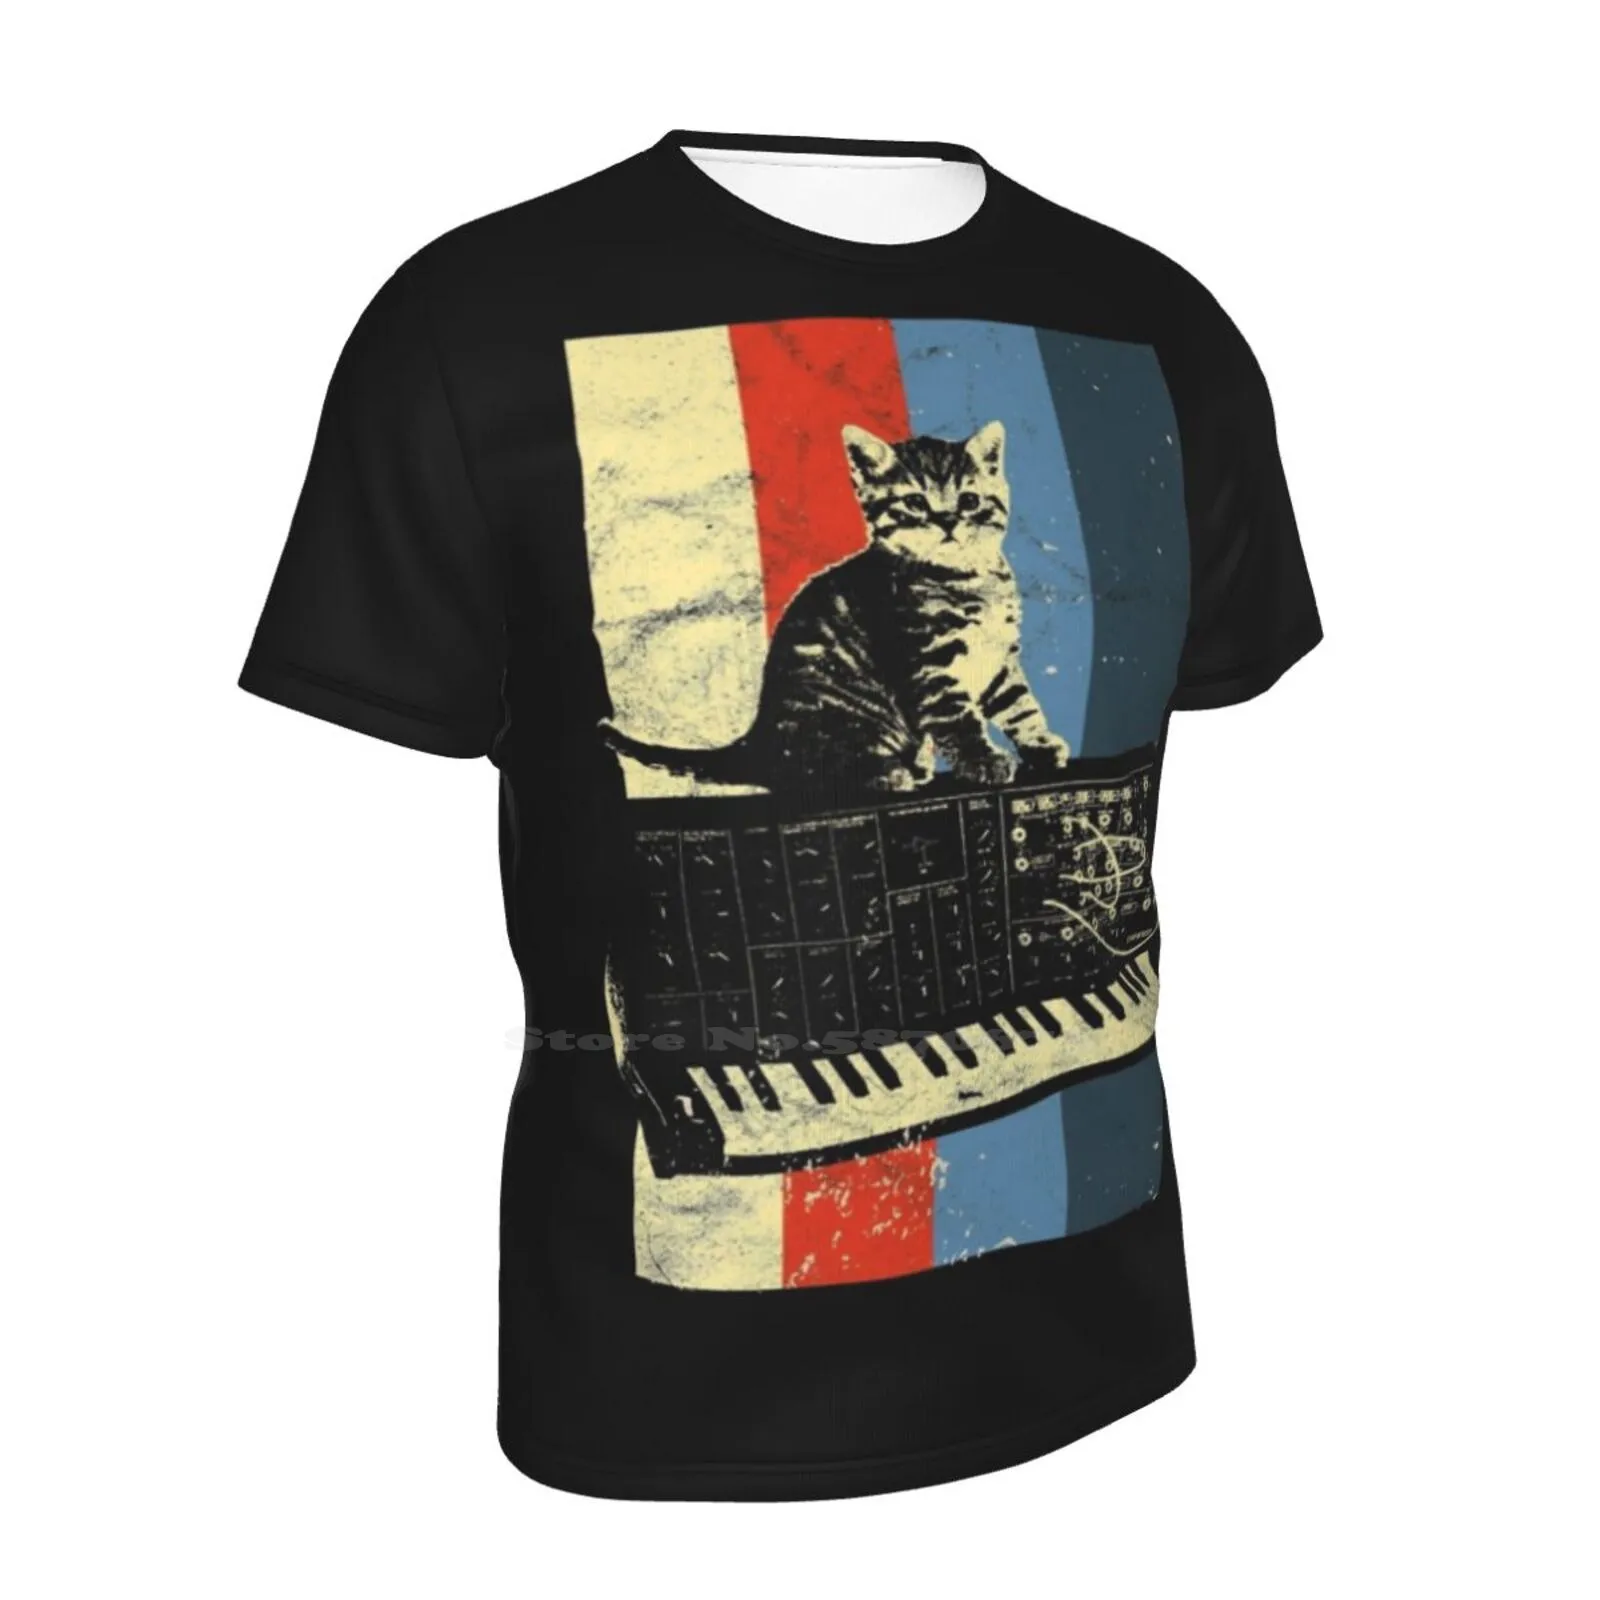 Синтезатор и кошка Винтажная футболка унисекс в стиле хип-хоп с аналоговым